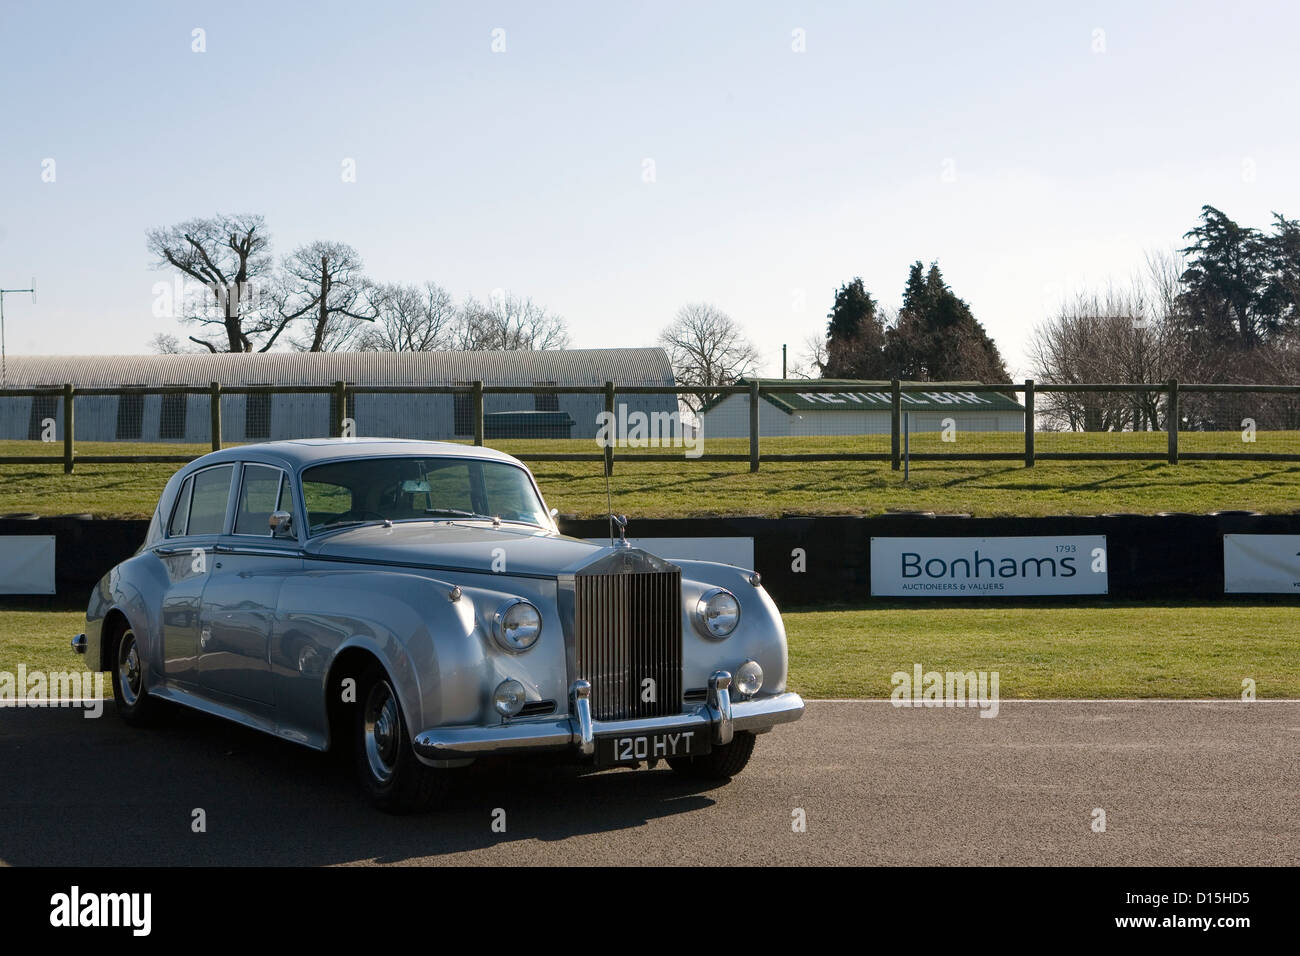 Ein Rolls-Royce-Luxus-Auto geparkt auf Asphalt vor Werbetafeln. Stockfoto